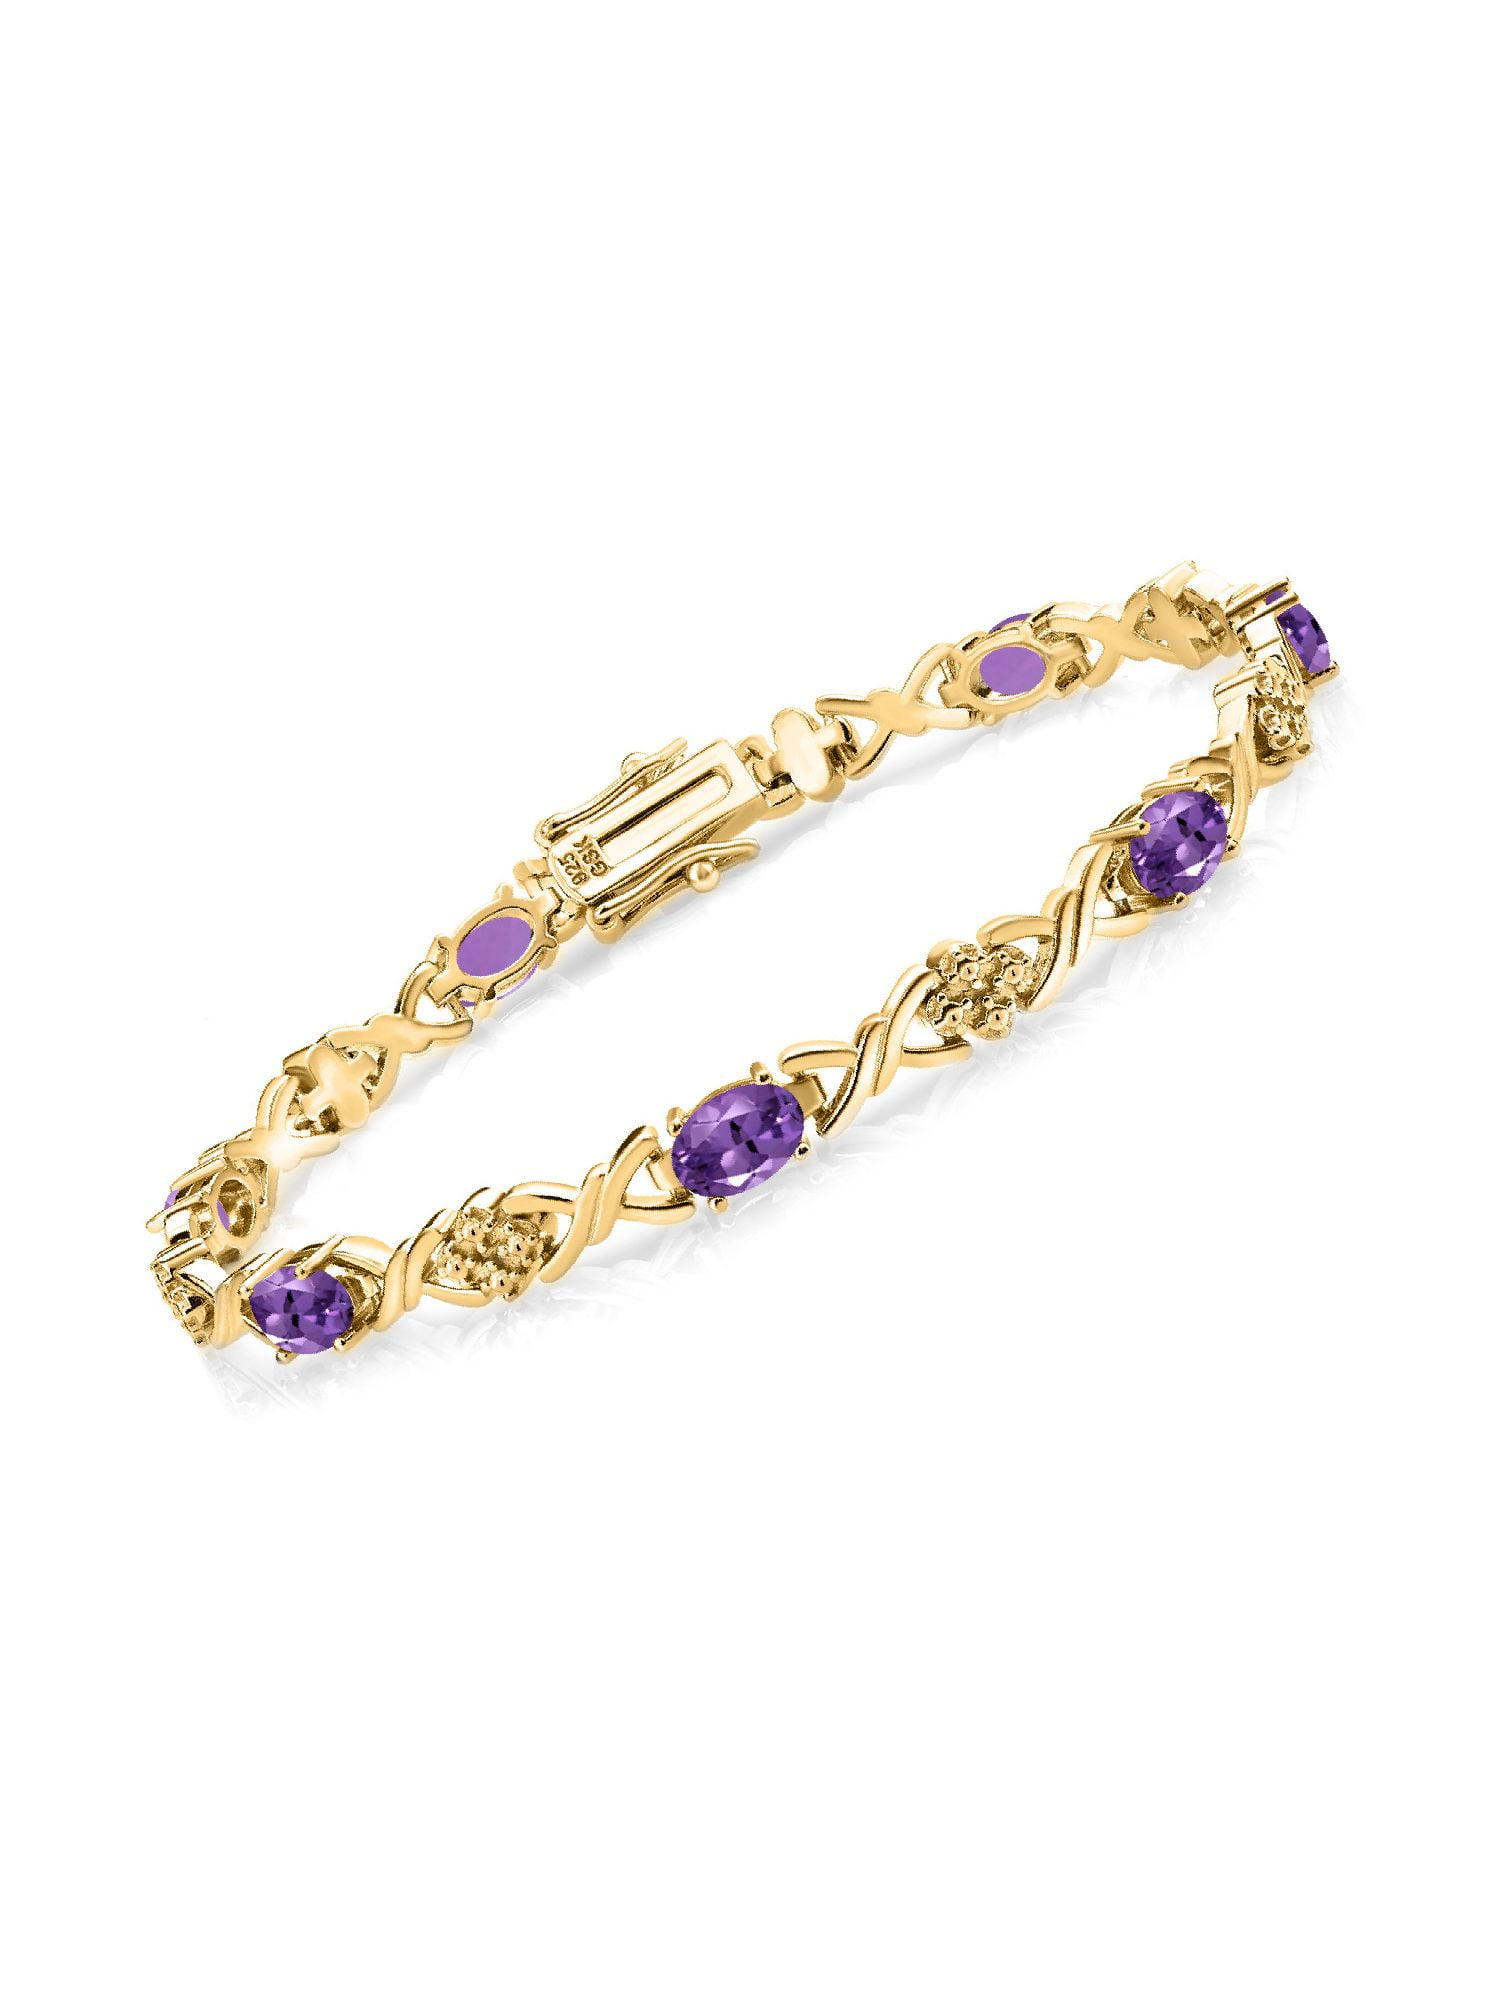 Buy Purple Amethyst Bracelet, Cuff Bracelet, 925 Silver Bracelet, Gemstone  Bracelet, Healing Bracelet, Women Bracelet, Statement Bracelet Online in  India - Etsy